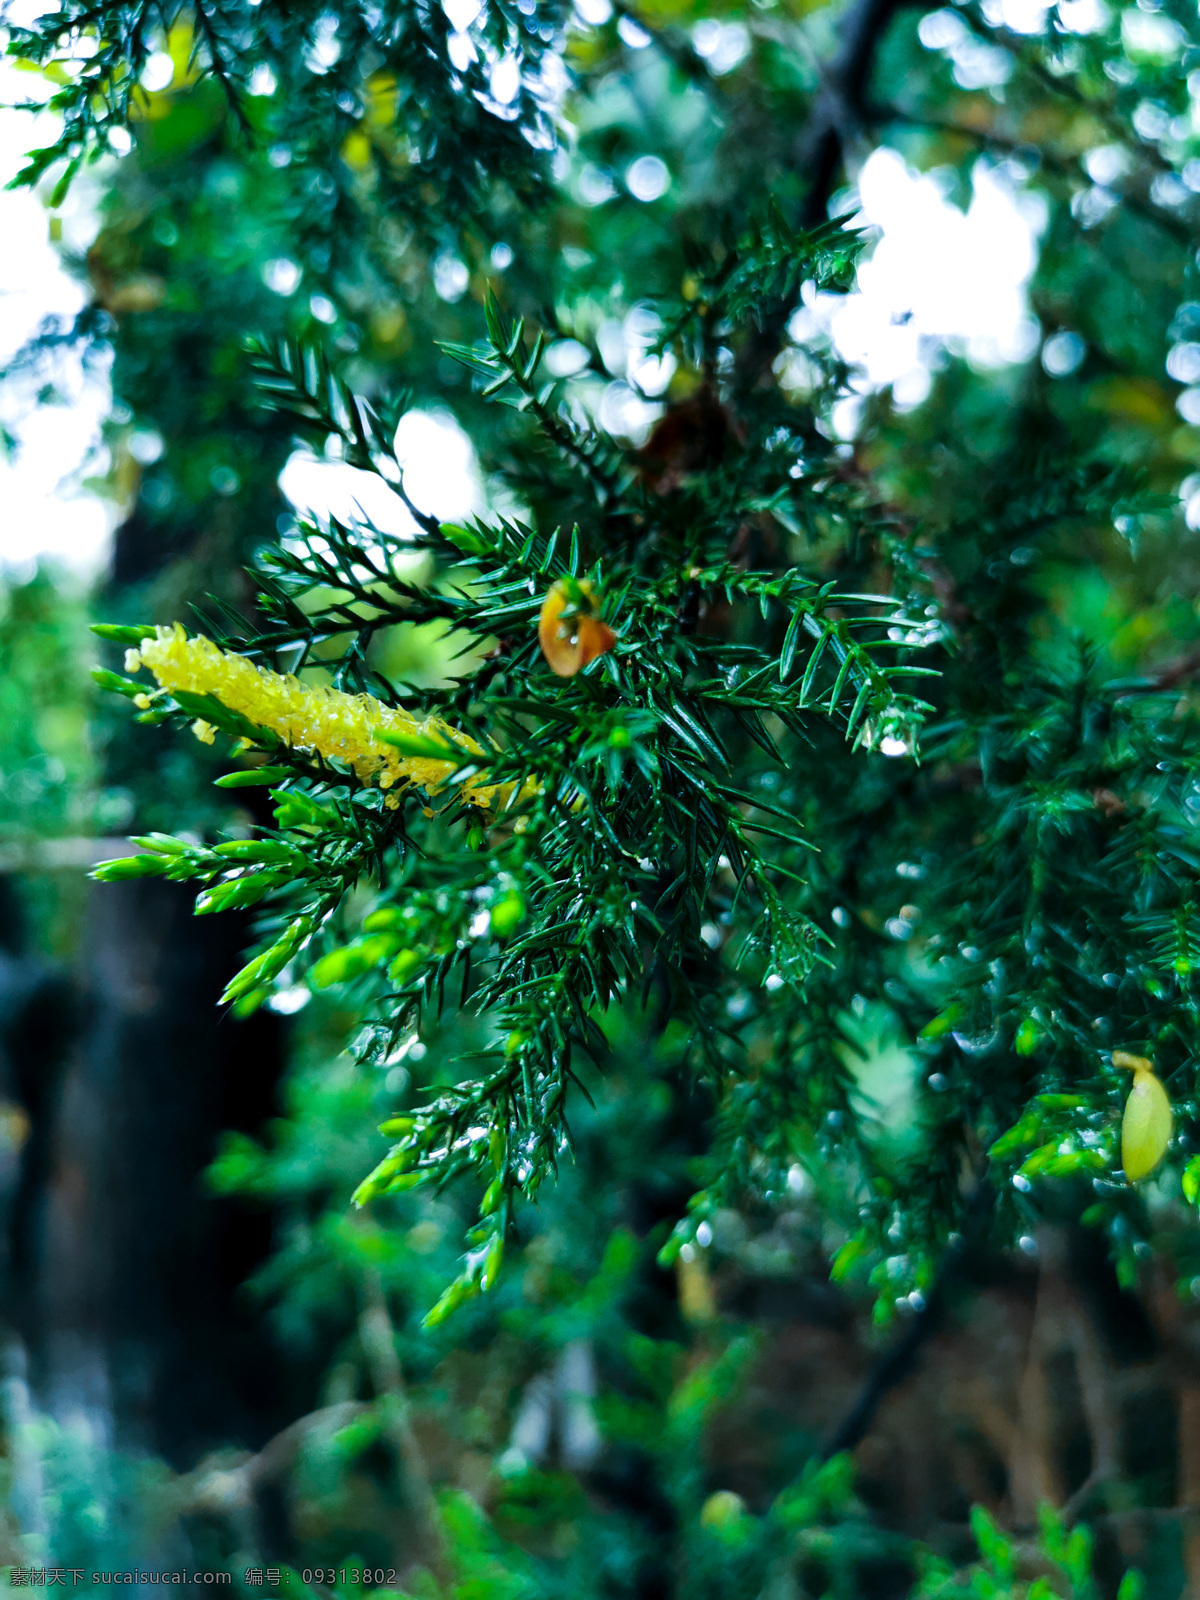 柏树叶子 圆柏 刺柏 柏树 桧 桧柏 叶子 树叶 雨后 水滴 露水 乔木 墨绿色 高级绿 生物世界 树木树叶